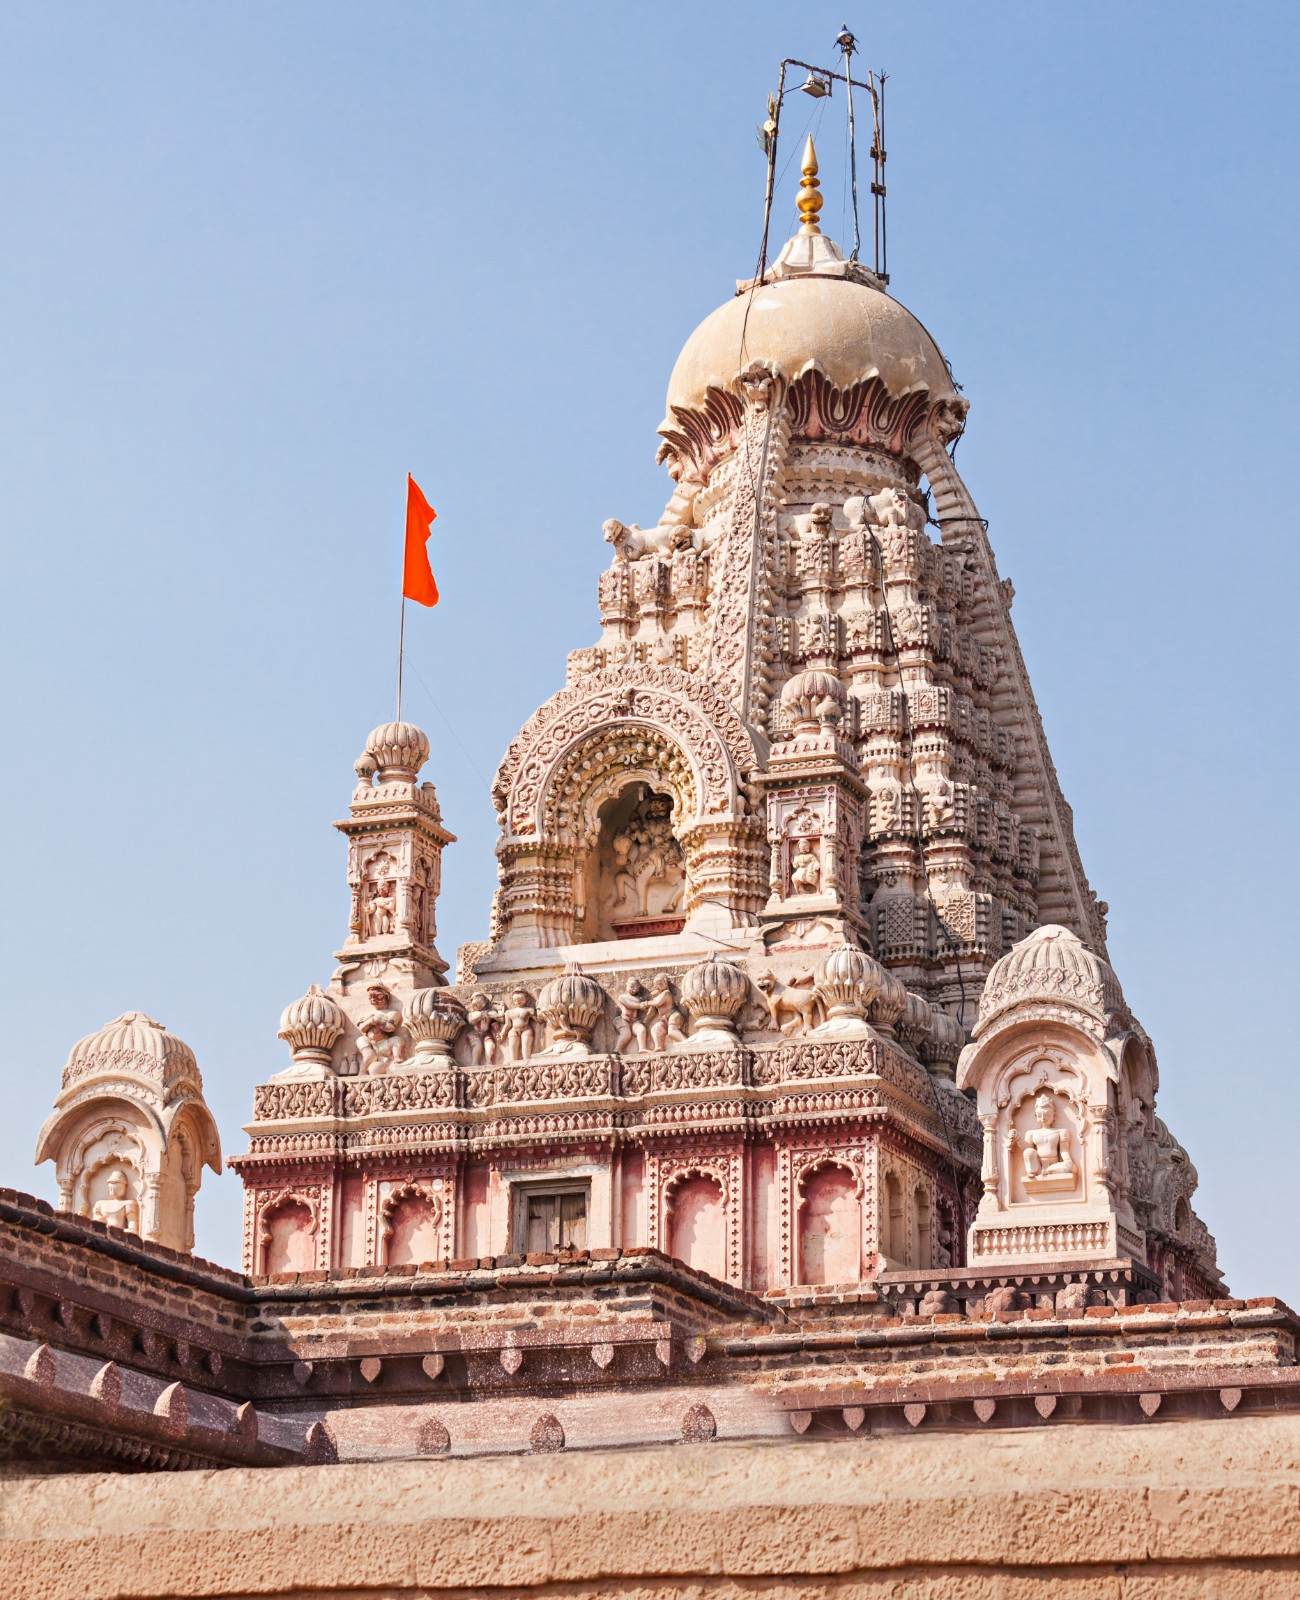 Grishneshwar Temple in Maharashtra